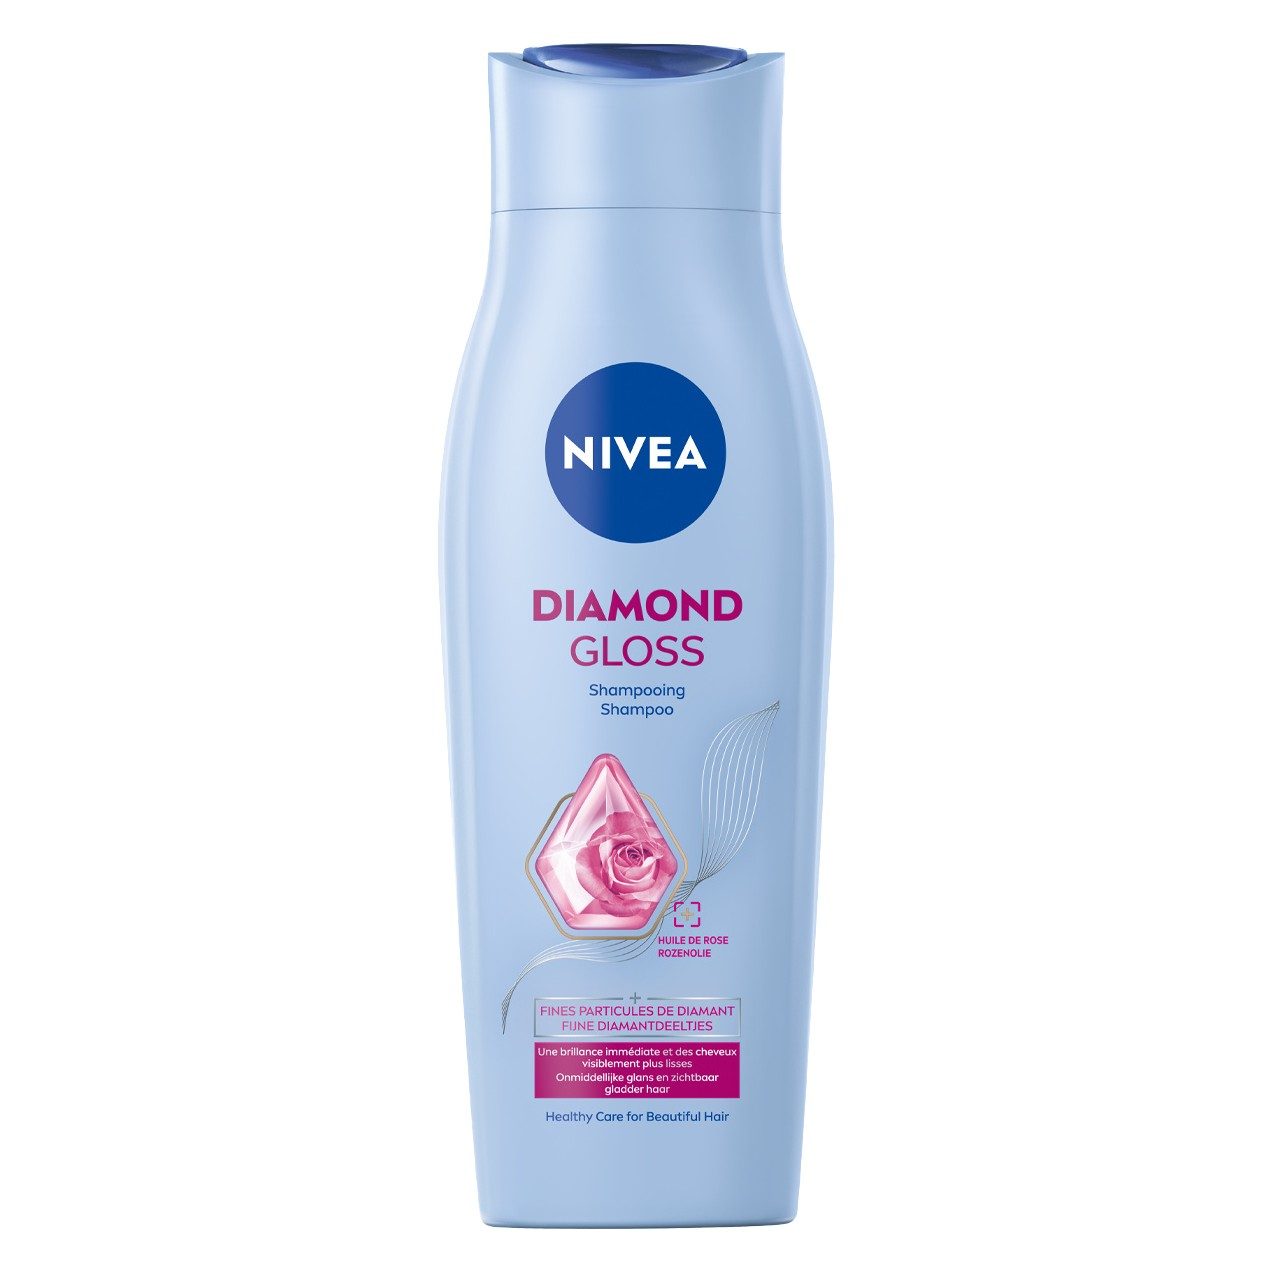 Shampoo diamond gloss